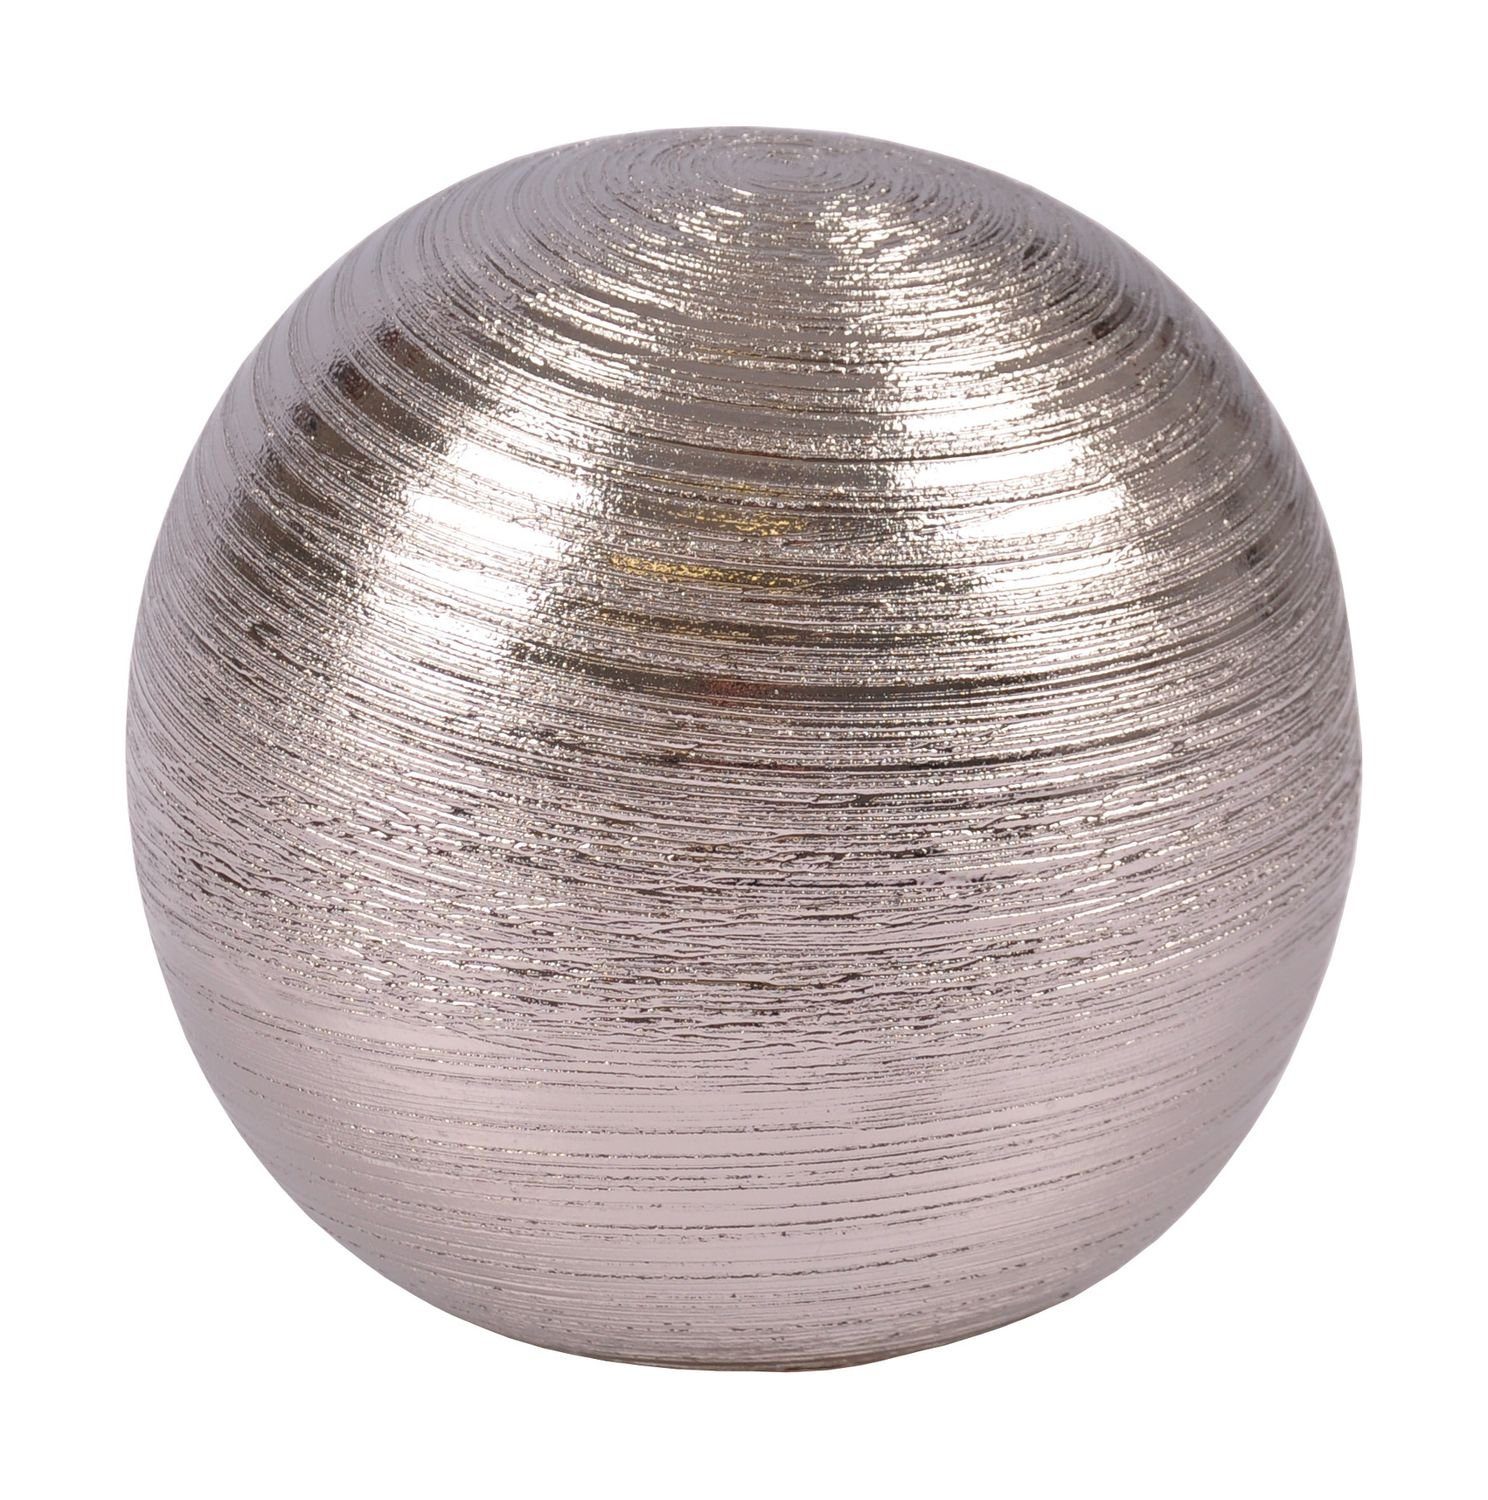 Tischdeko Dekokugel Keramik aus silber New 12,5cm Dekofigur Ku Dekofigur Home Silberkugel